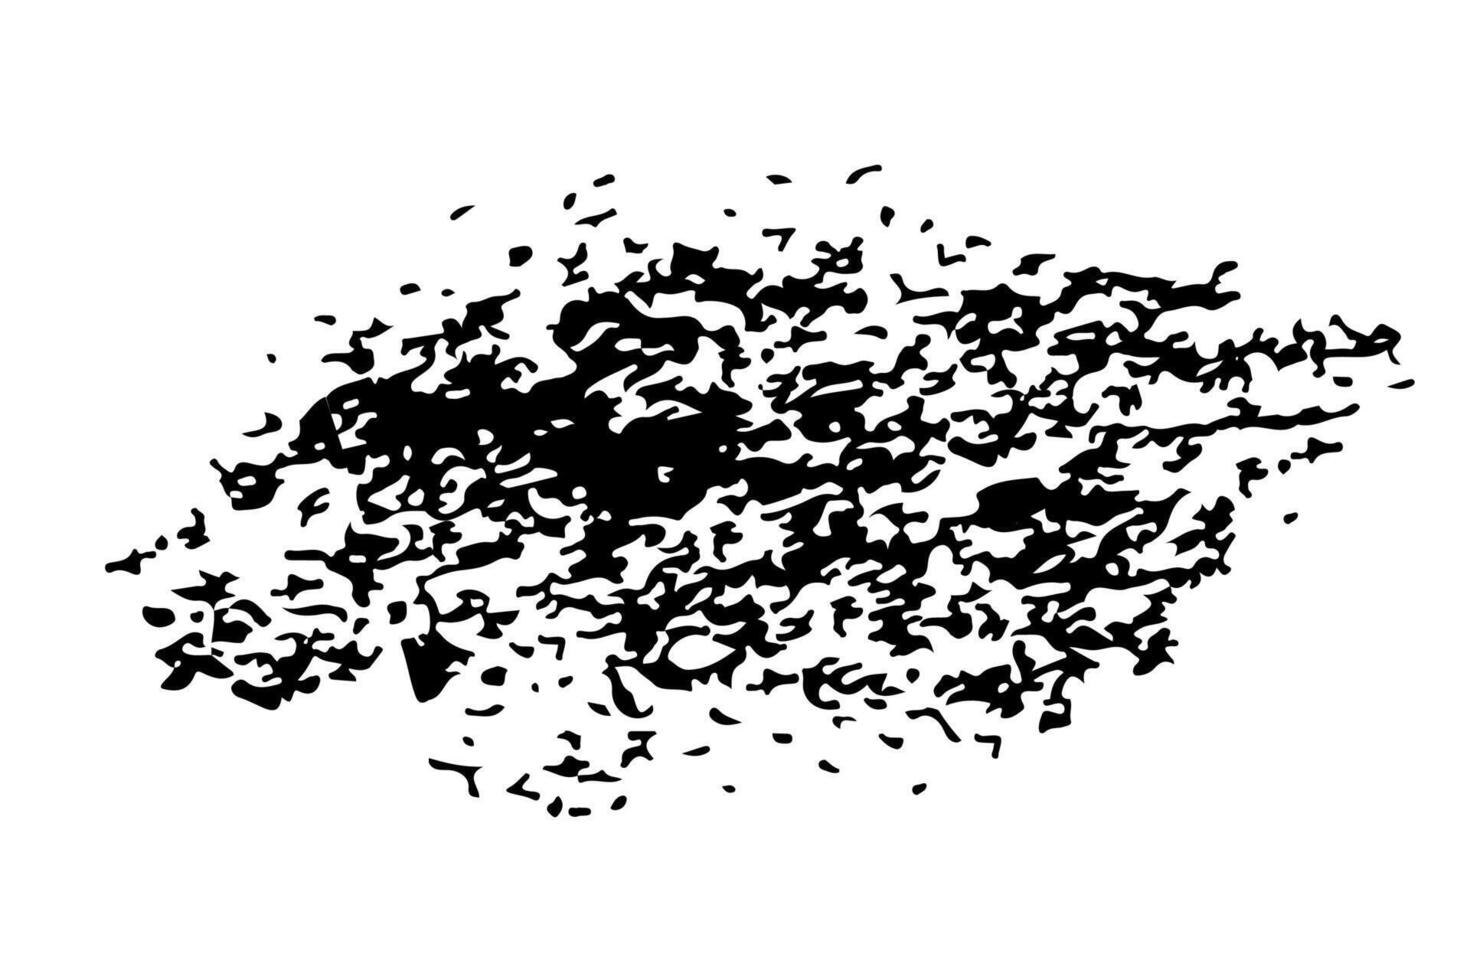 bläck splat överlagrat förbi prickar i svart och vit. vektor illustration